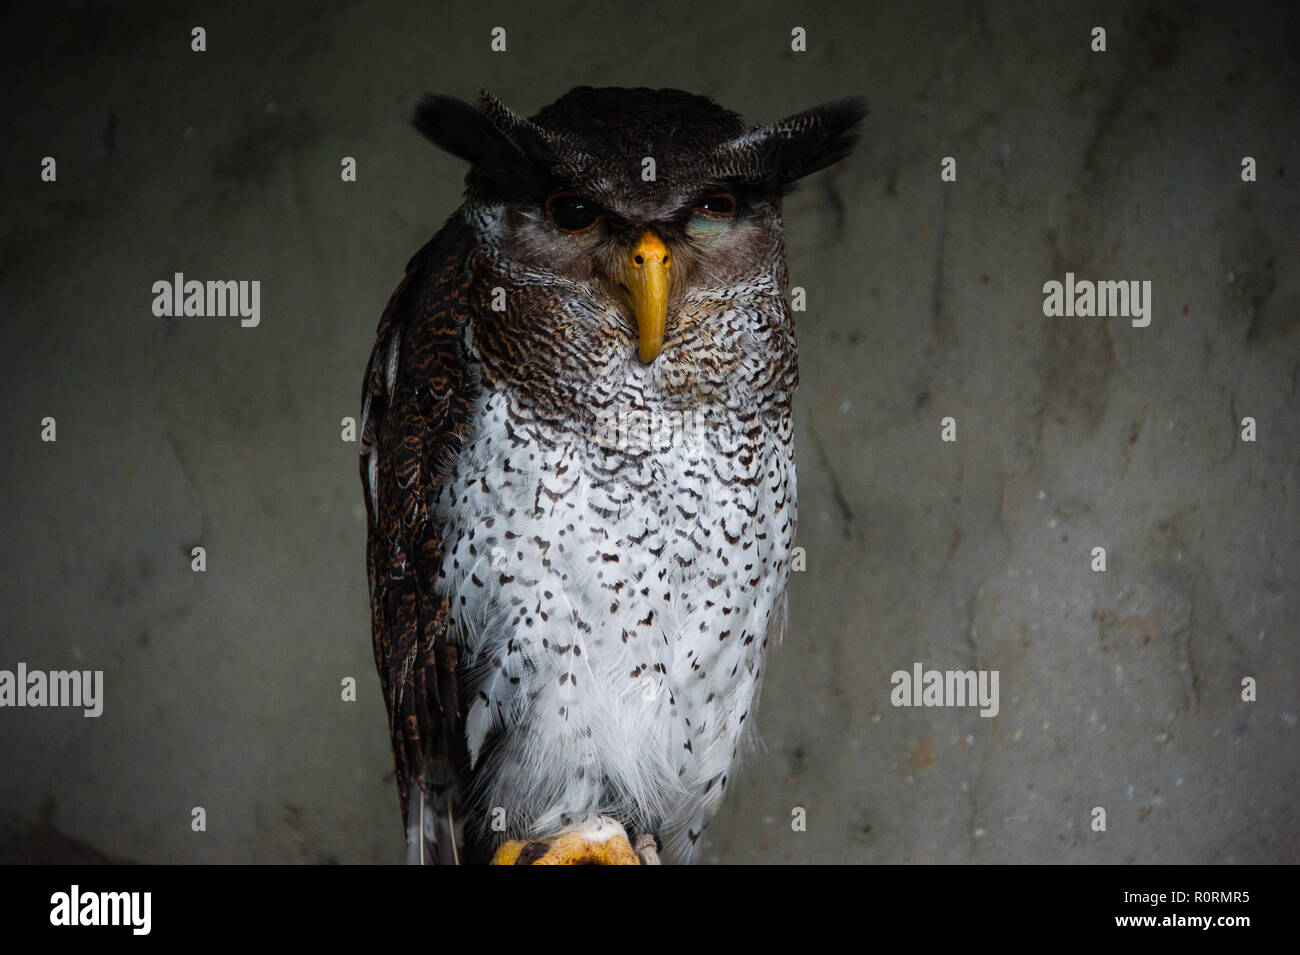 Portrait of a Malay or barred eagle-owl (Bubo sumatranus). Stock Photo